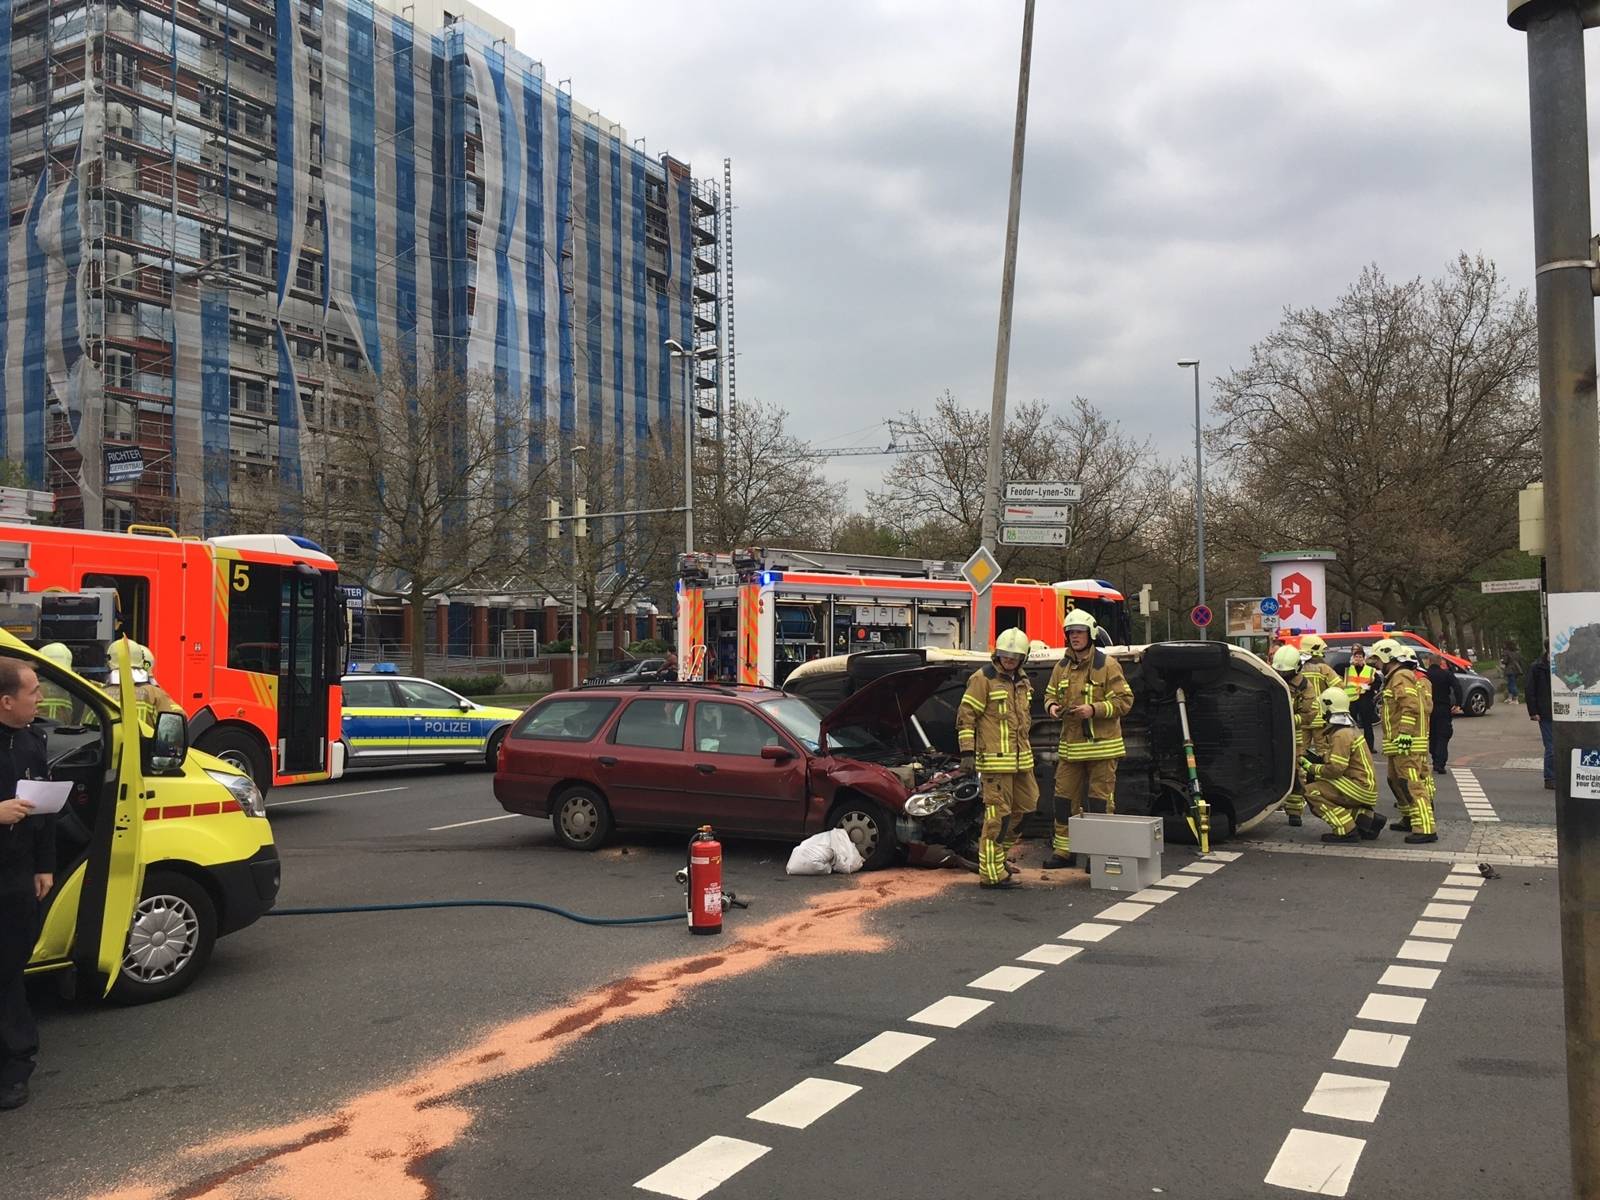 Am Montagnachmittag kam es zu einem Zusammenstoß zweier Fahrzeuge im Kreuzungsbereich Karl-Wiechert-Allee und Feodor-Lynen-Straße. Hierbei wurde eine Person in ihrem Fahrzeug eingeklemmt.